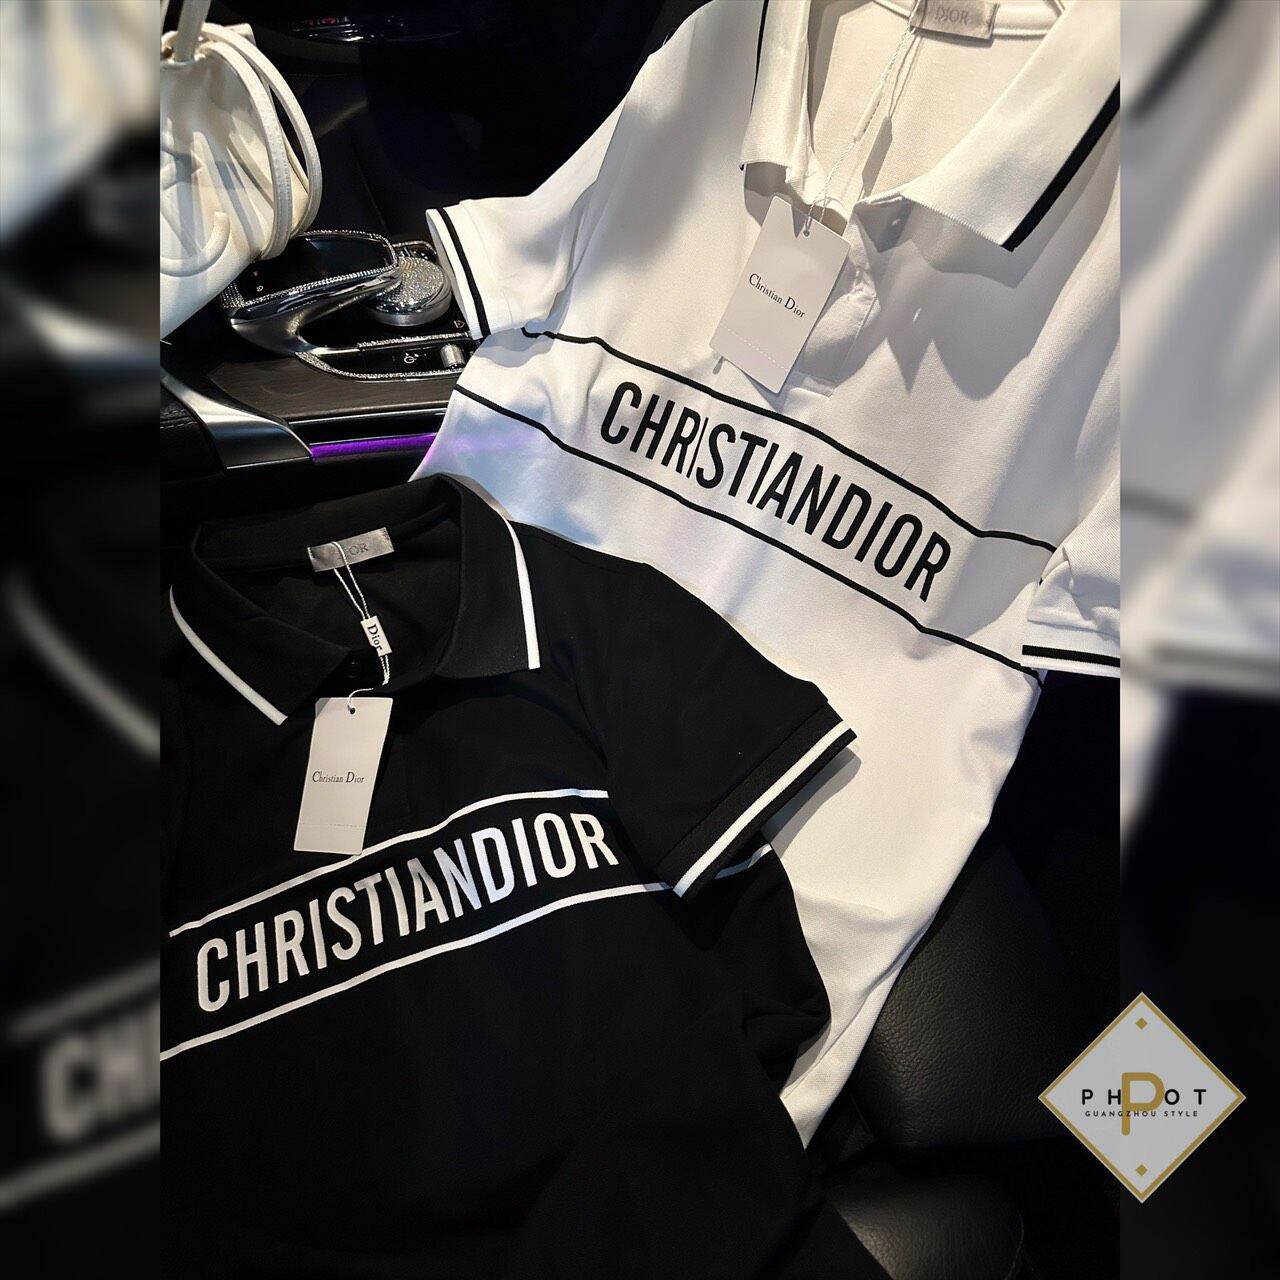 Áo polo Christian Dior cho nam nữ với 2 màu đen và trắng